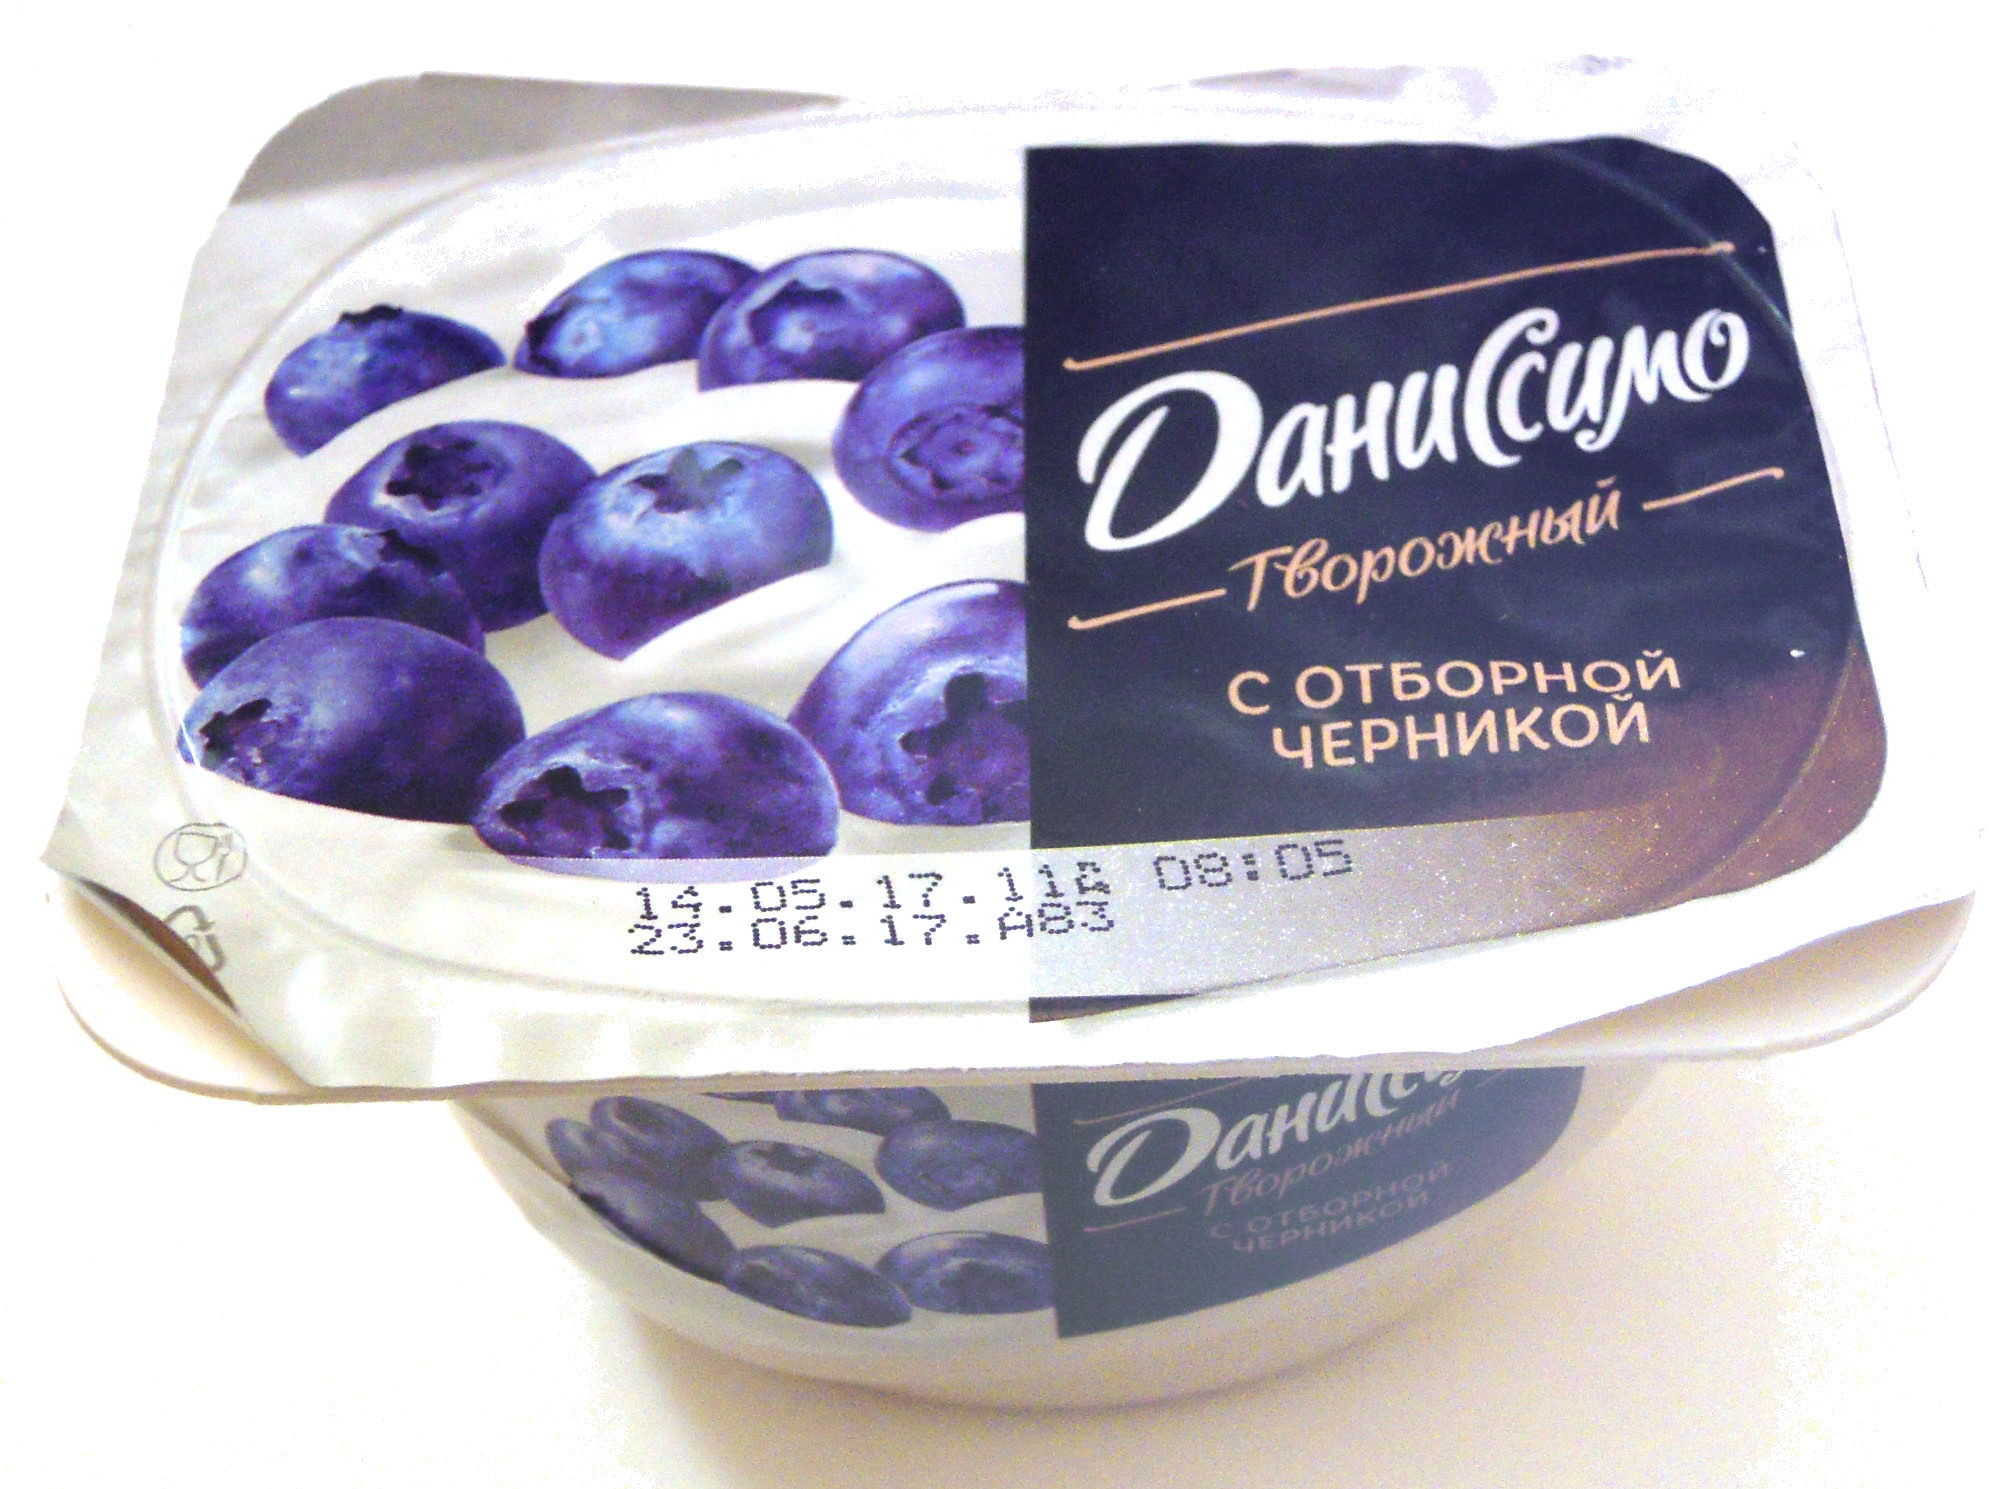 «Даниссимо» Творожный с отборной черникой - Product - ru